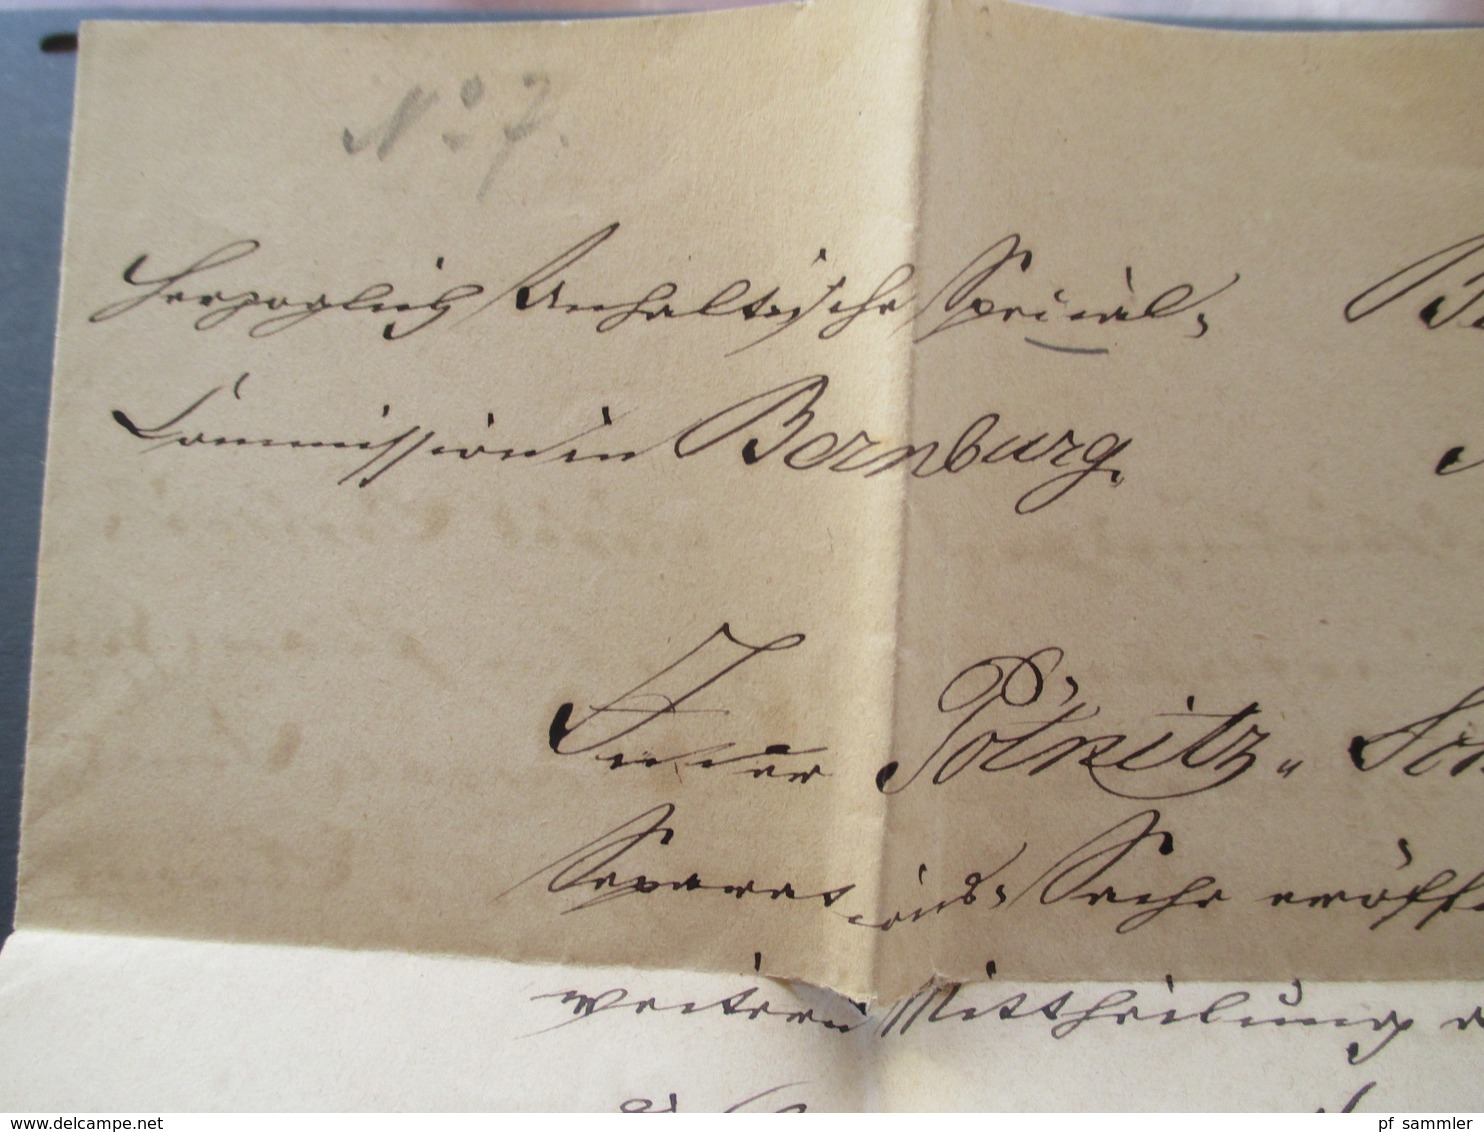 1876 Dienstbrief Bernburg - Oranienbaum beide Stempel K1 und rückseitig ausgeschnittenes Papiersiegel Specialcommission